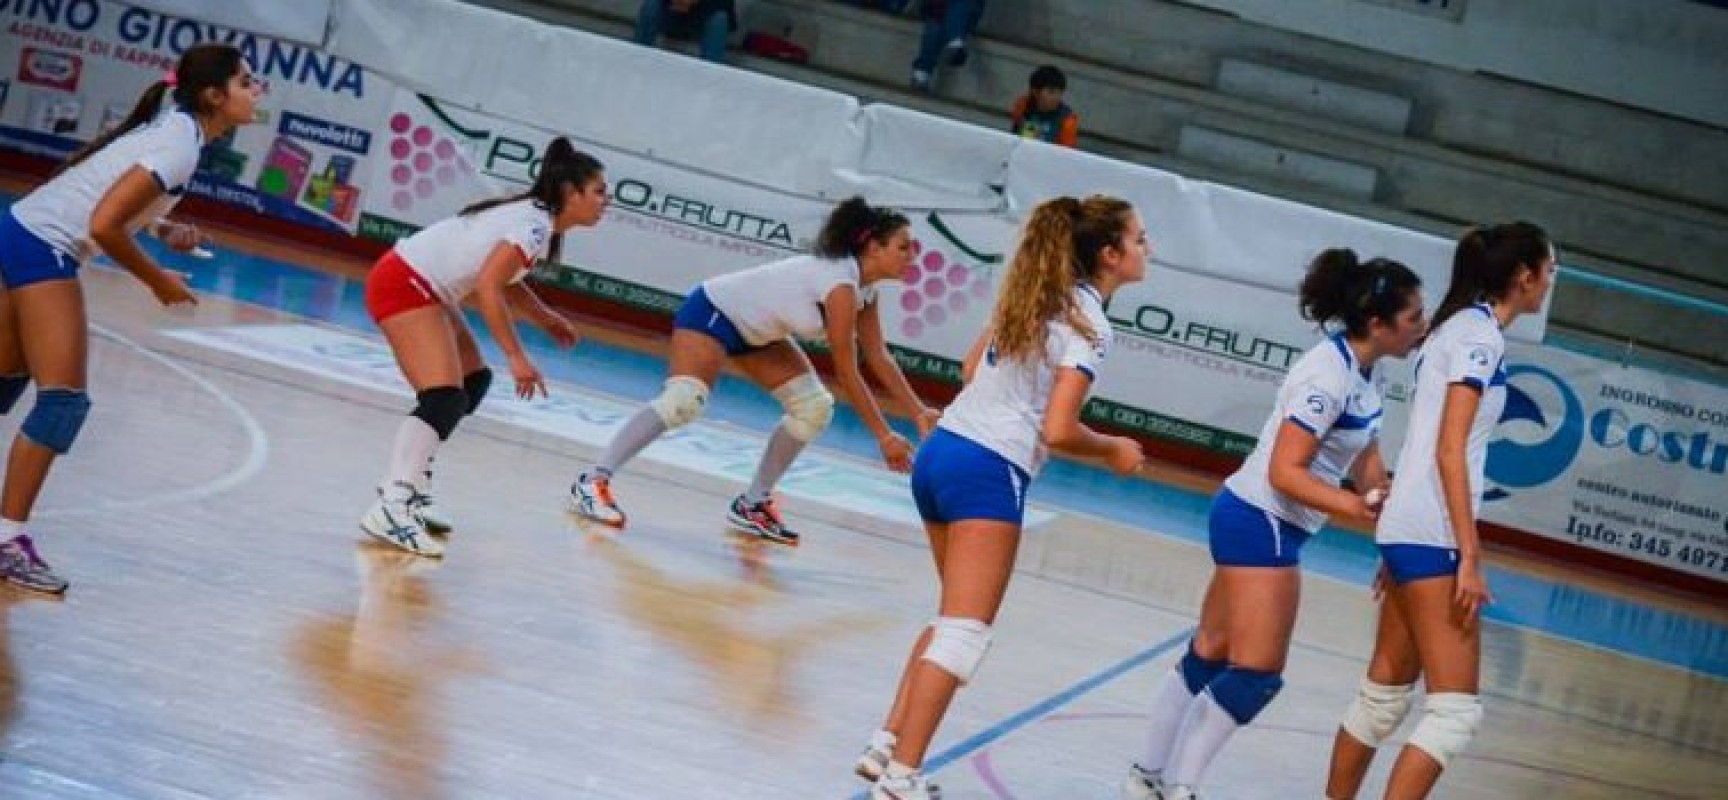 Volley: Sportilia ancora KO, sconfitta a Manfredonia per 3-0